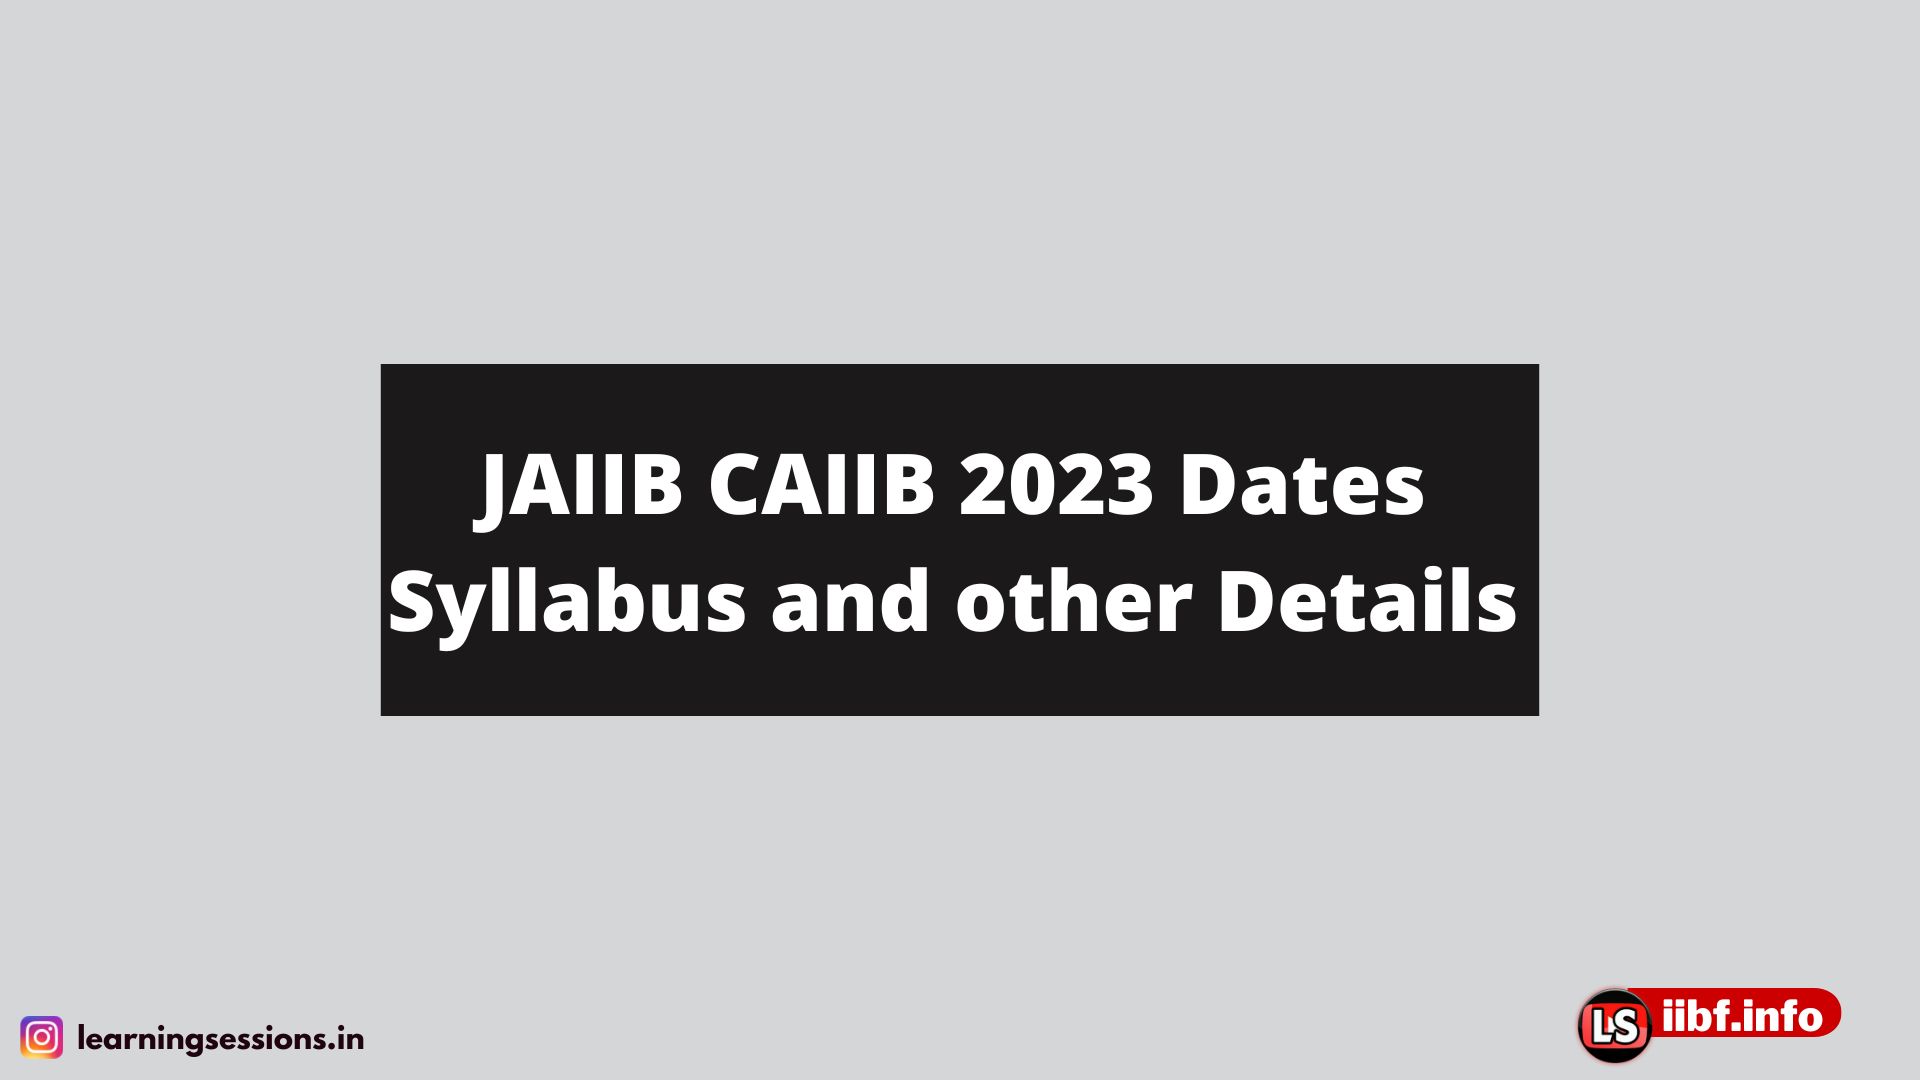 JAIIB CAIIB 2023 Dates Syllabus and other Details